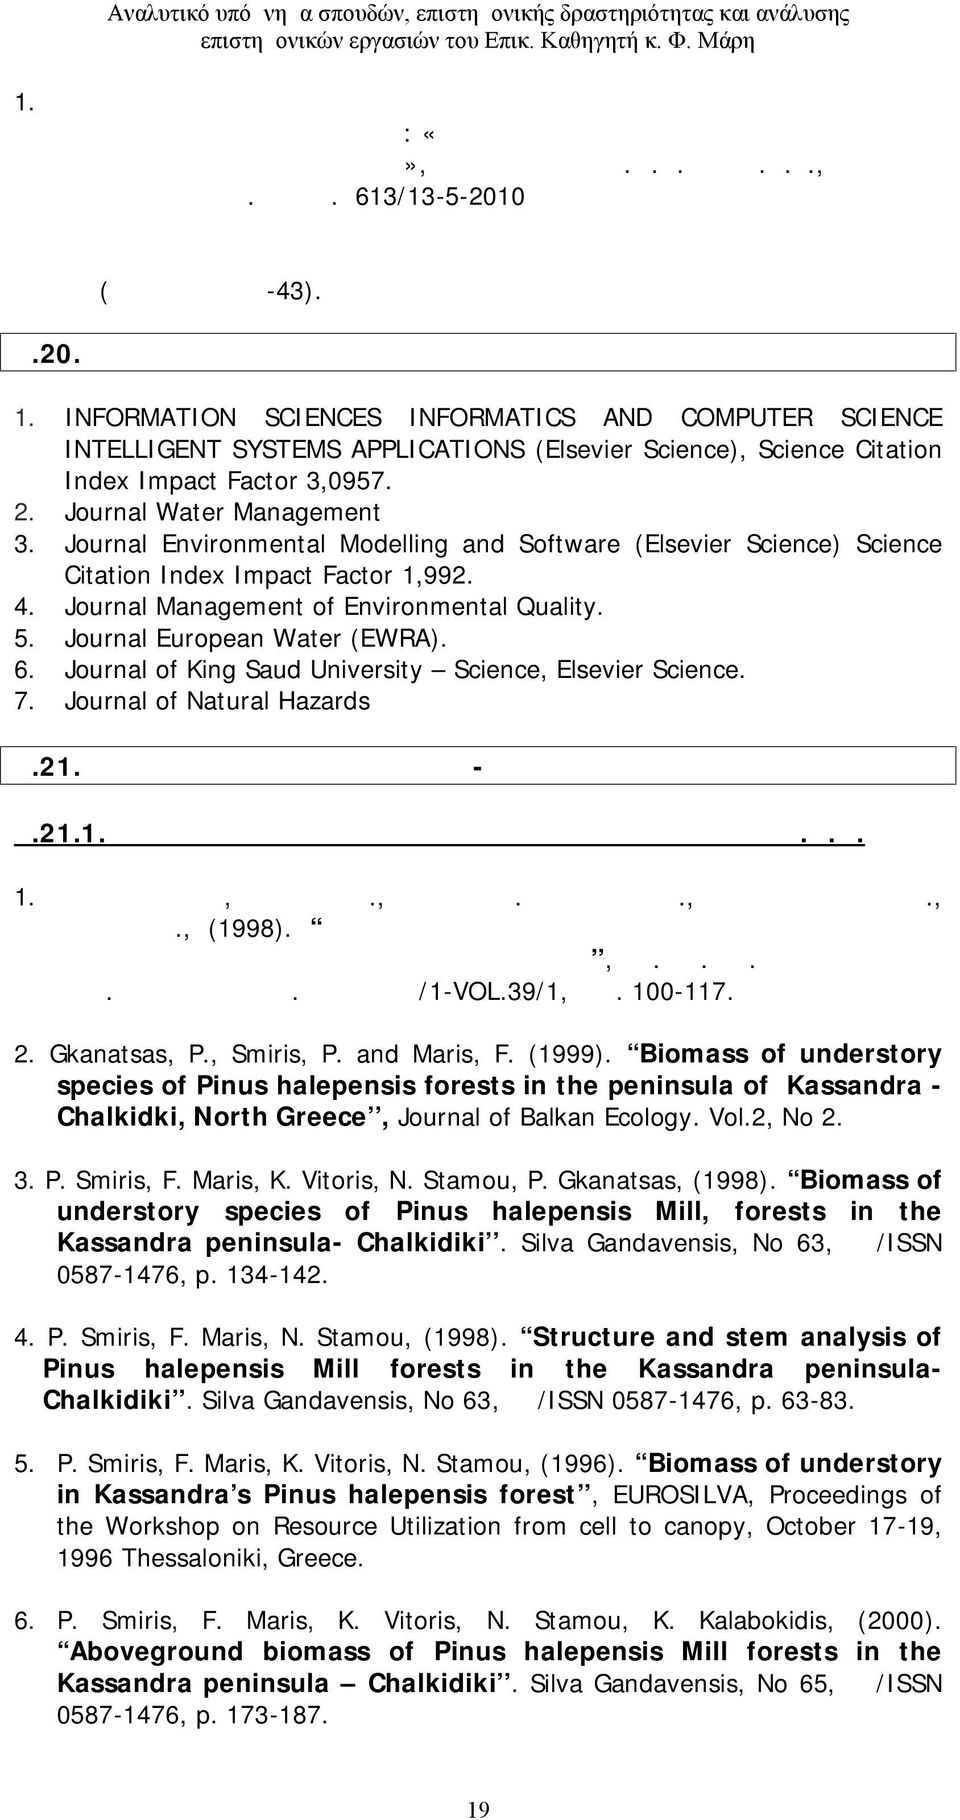 613/13-5-2010 έγγραφο της Γενικής Συνέλευσης Ειδικής Σύνθεσης του Τμήματος Αξιοποίησης Φυσικών Πόρων και Γεωργικής Μηχανικής του Γεωπονικού Πανεπιστημίου Αθηνών (αποδεικτικό Α-43). Α.20. Κριτής σε διεθνή περιοδικά 1.